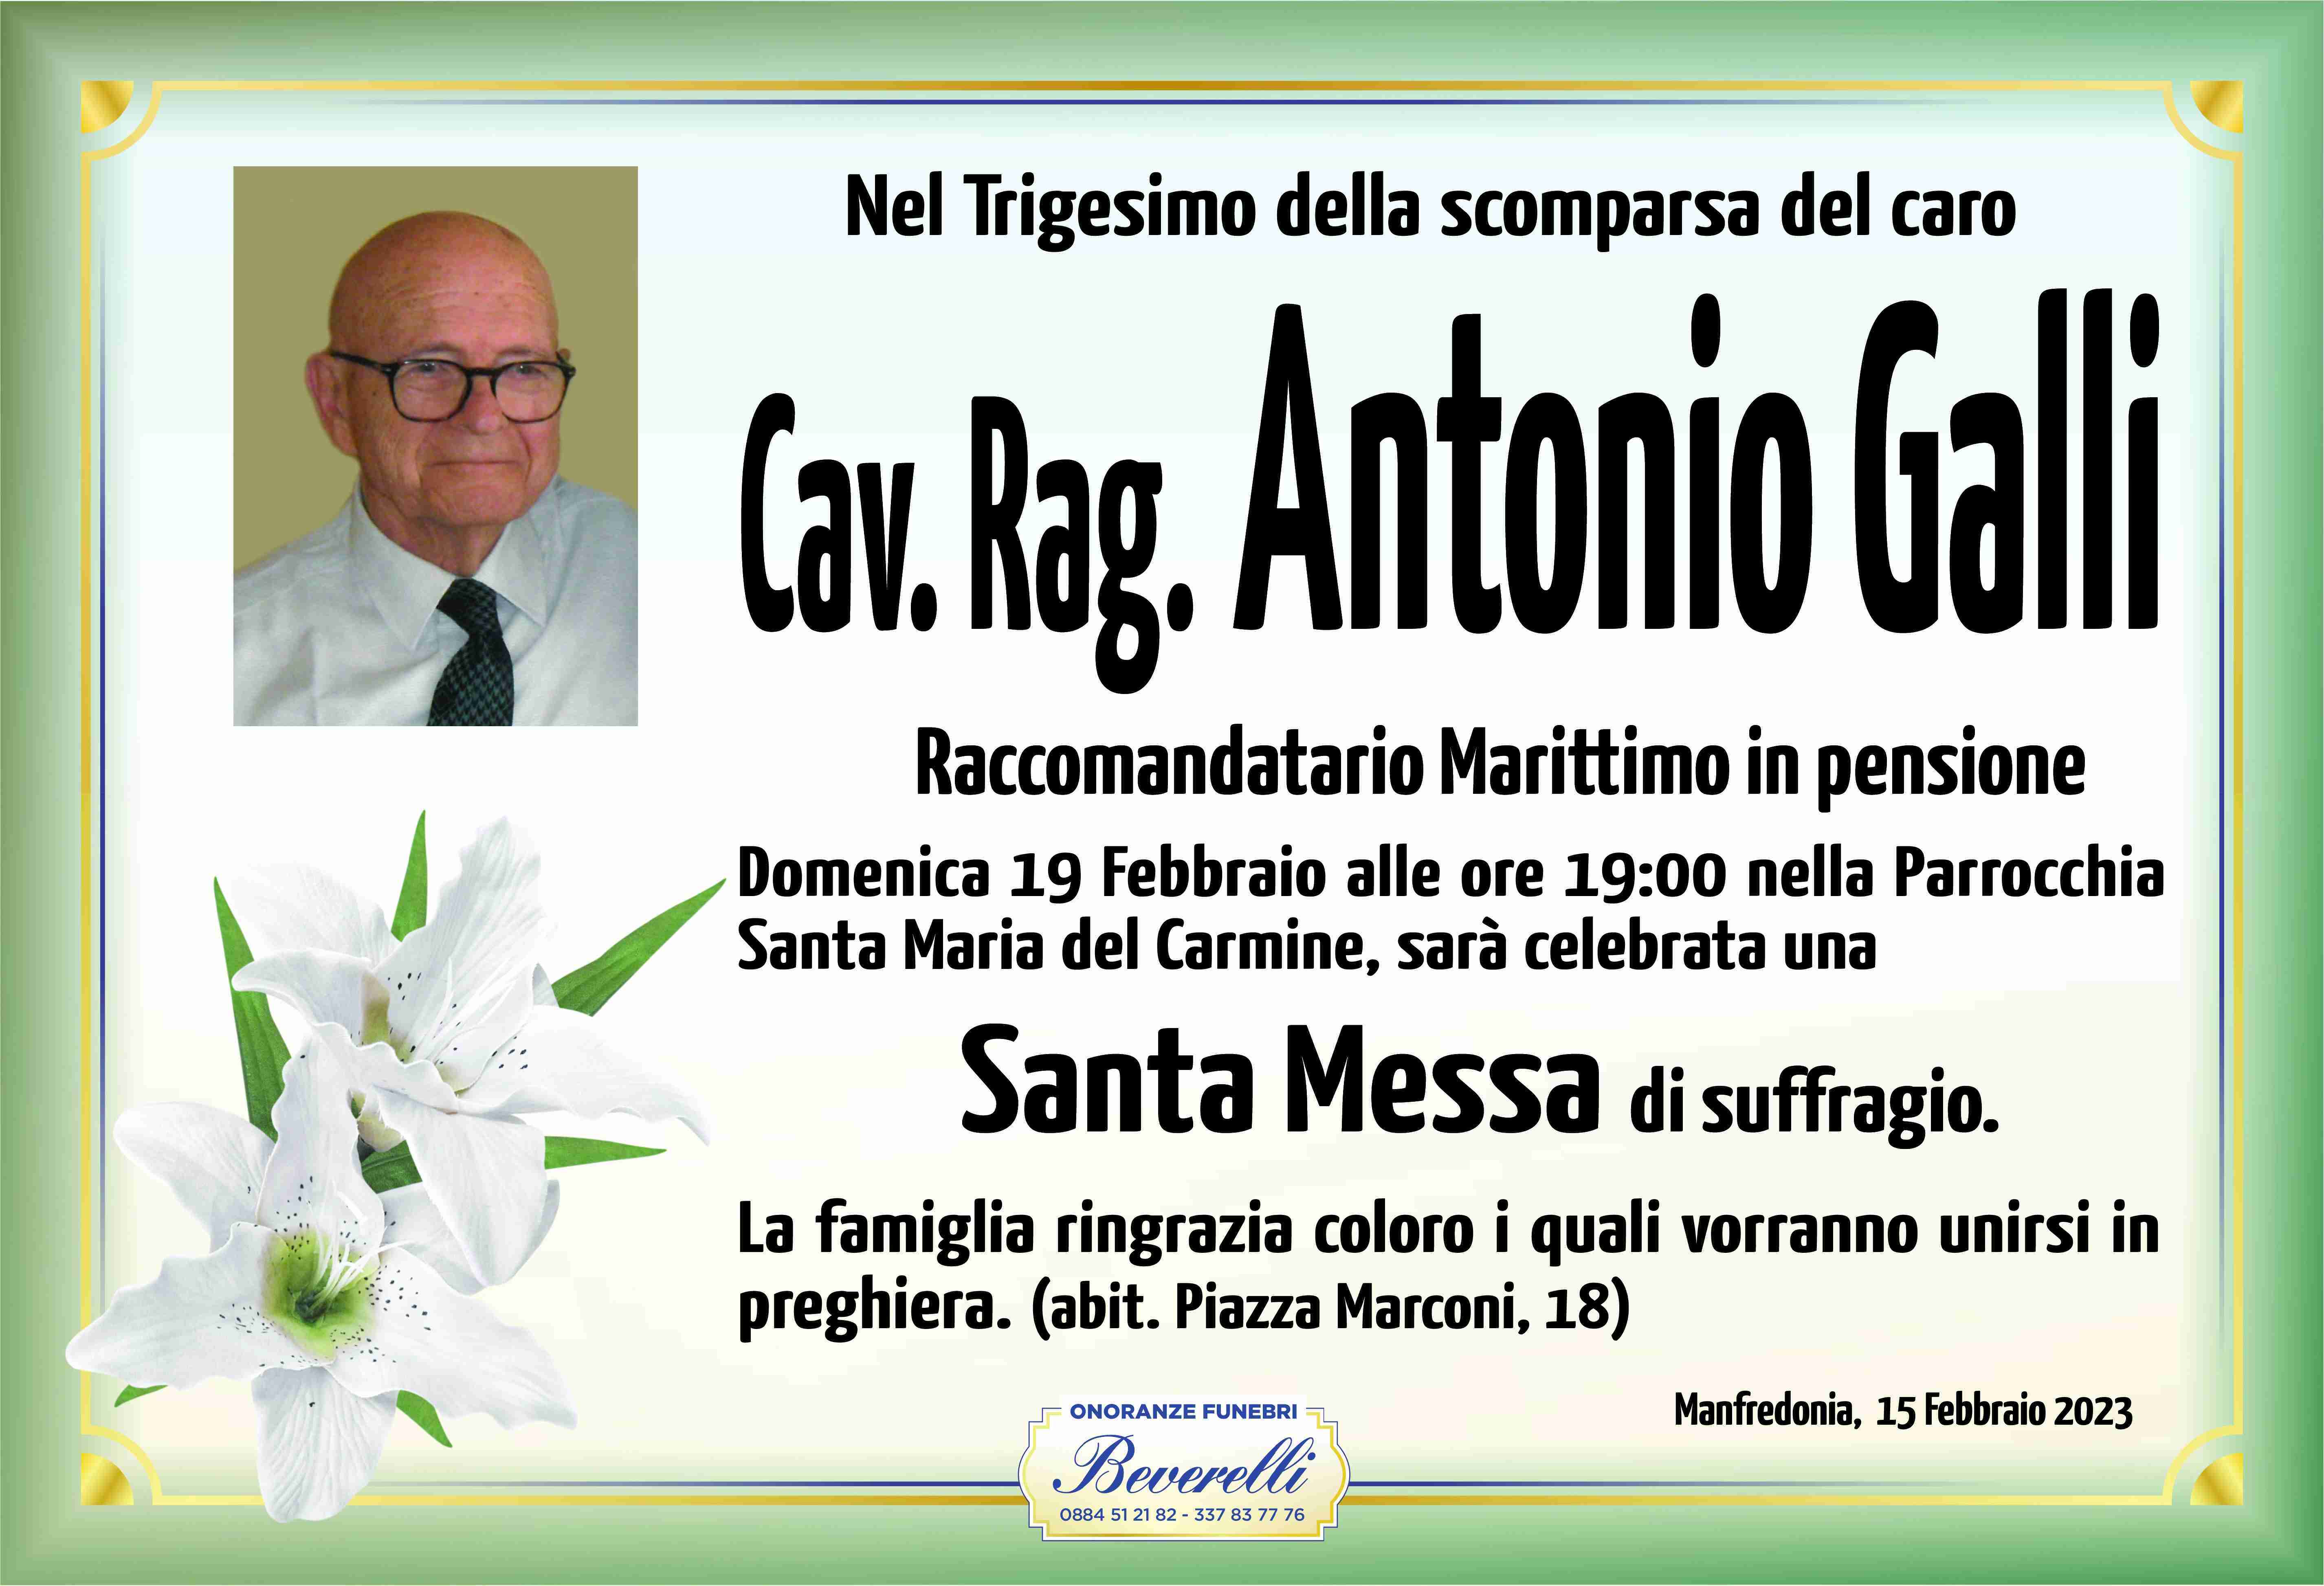 Antonio Galli